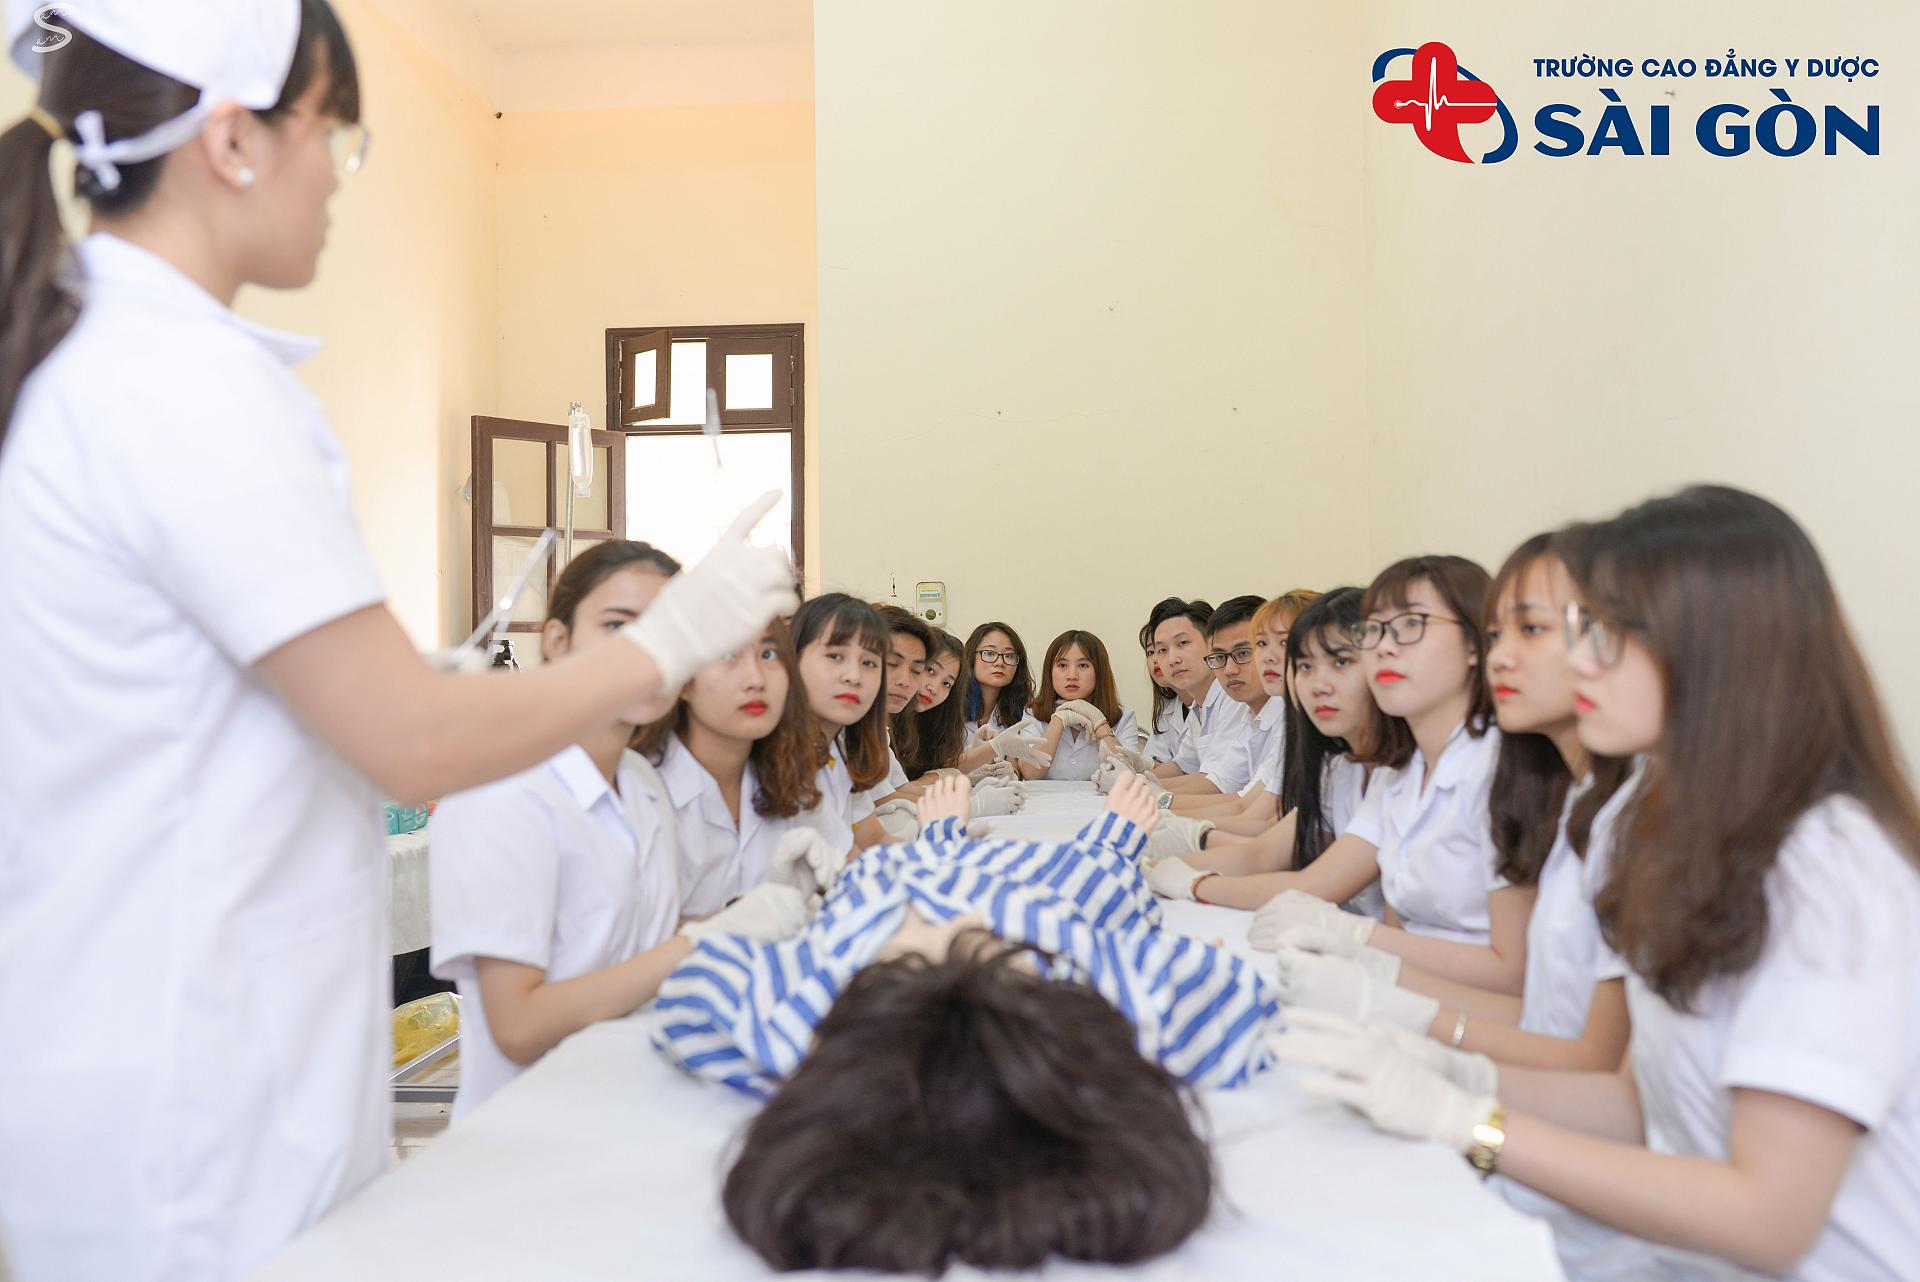 Trường Cao đẳng Y Dược Sài Gòn đào tạo chuyên sâu về thực hành